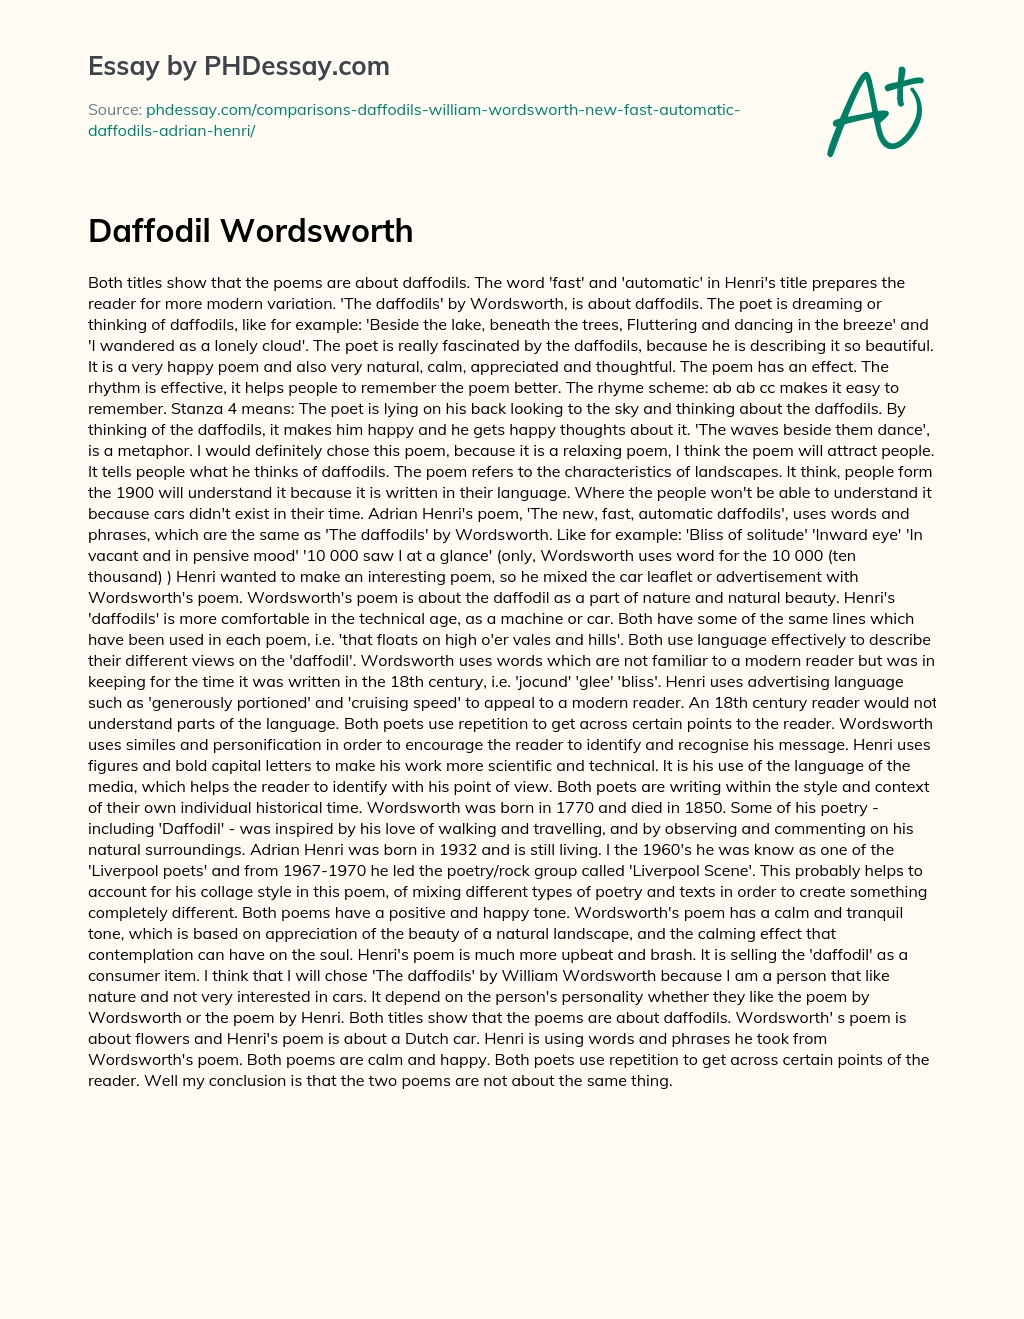 Daffodil Wordsworth essay